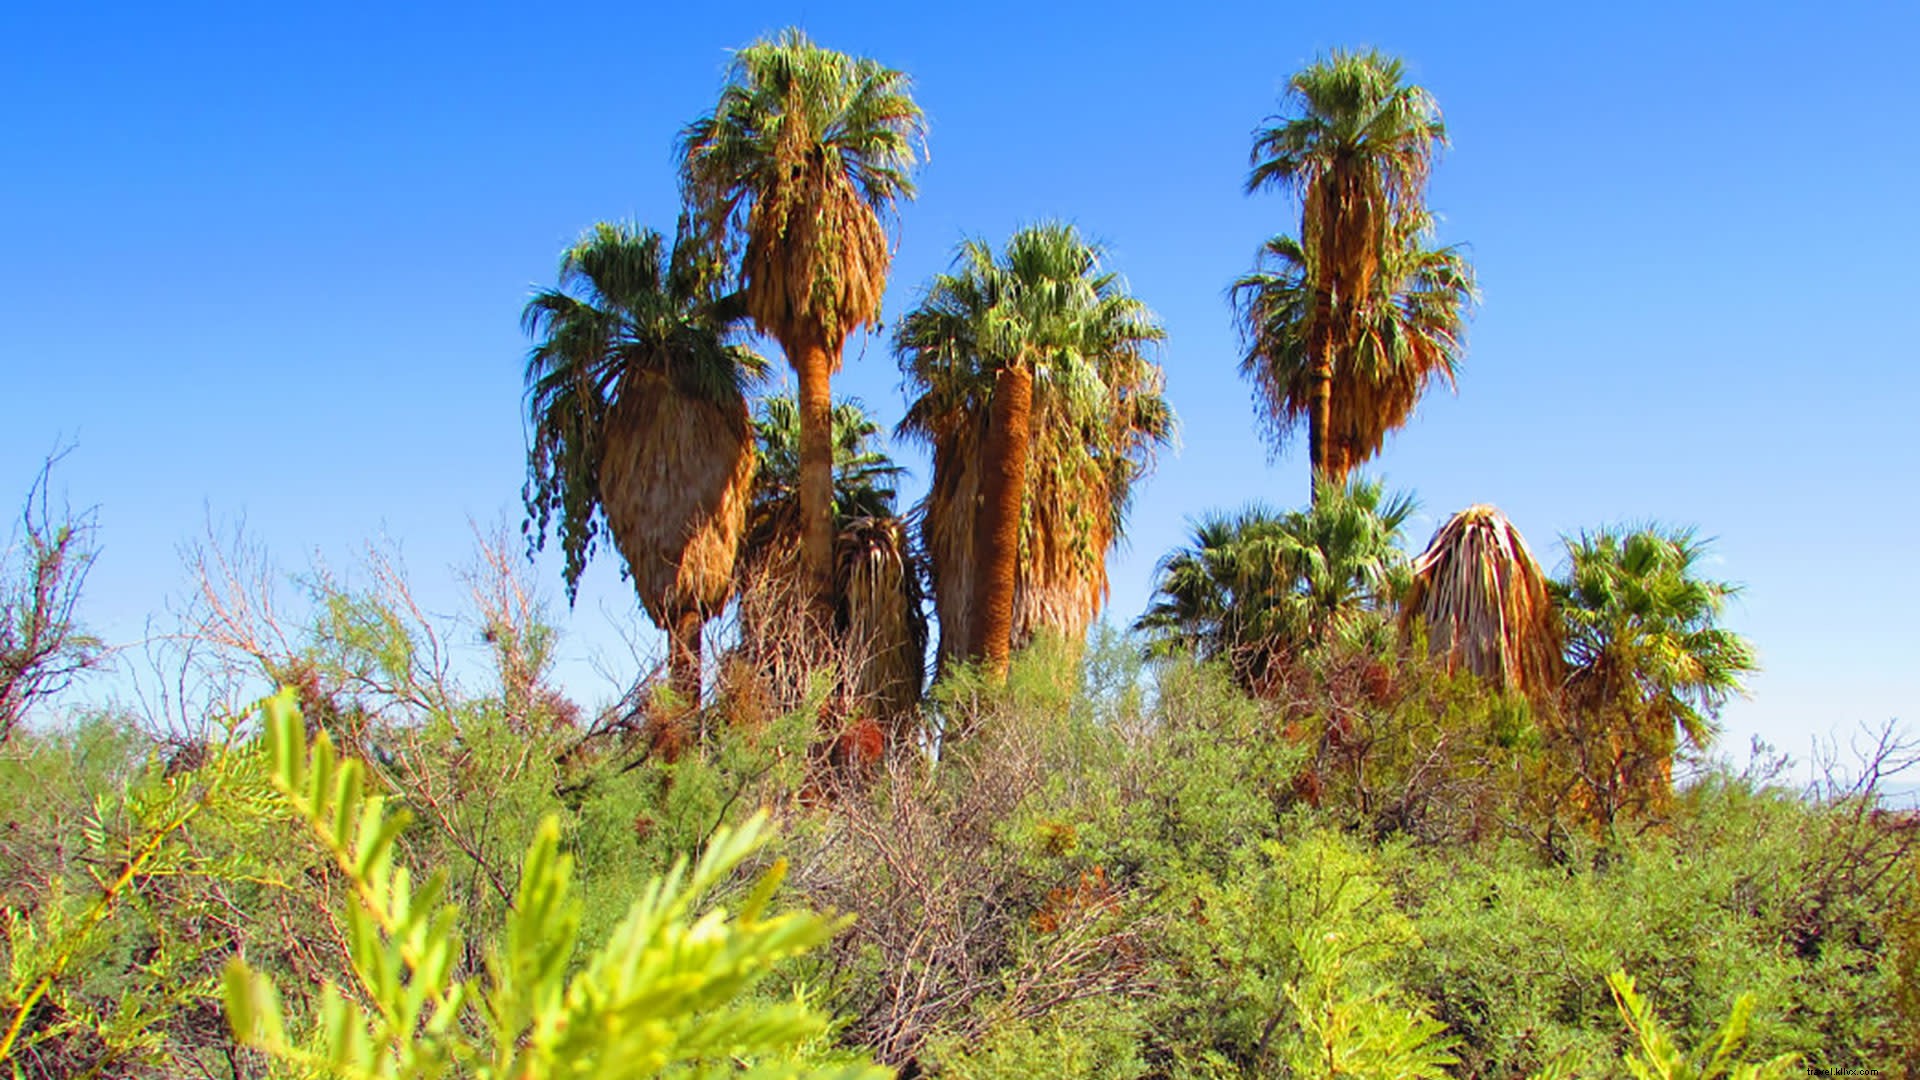 Le migliori escursioni all oasi a Greater Palm Springs 